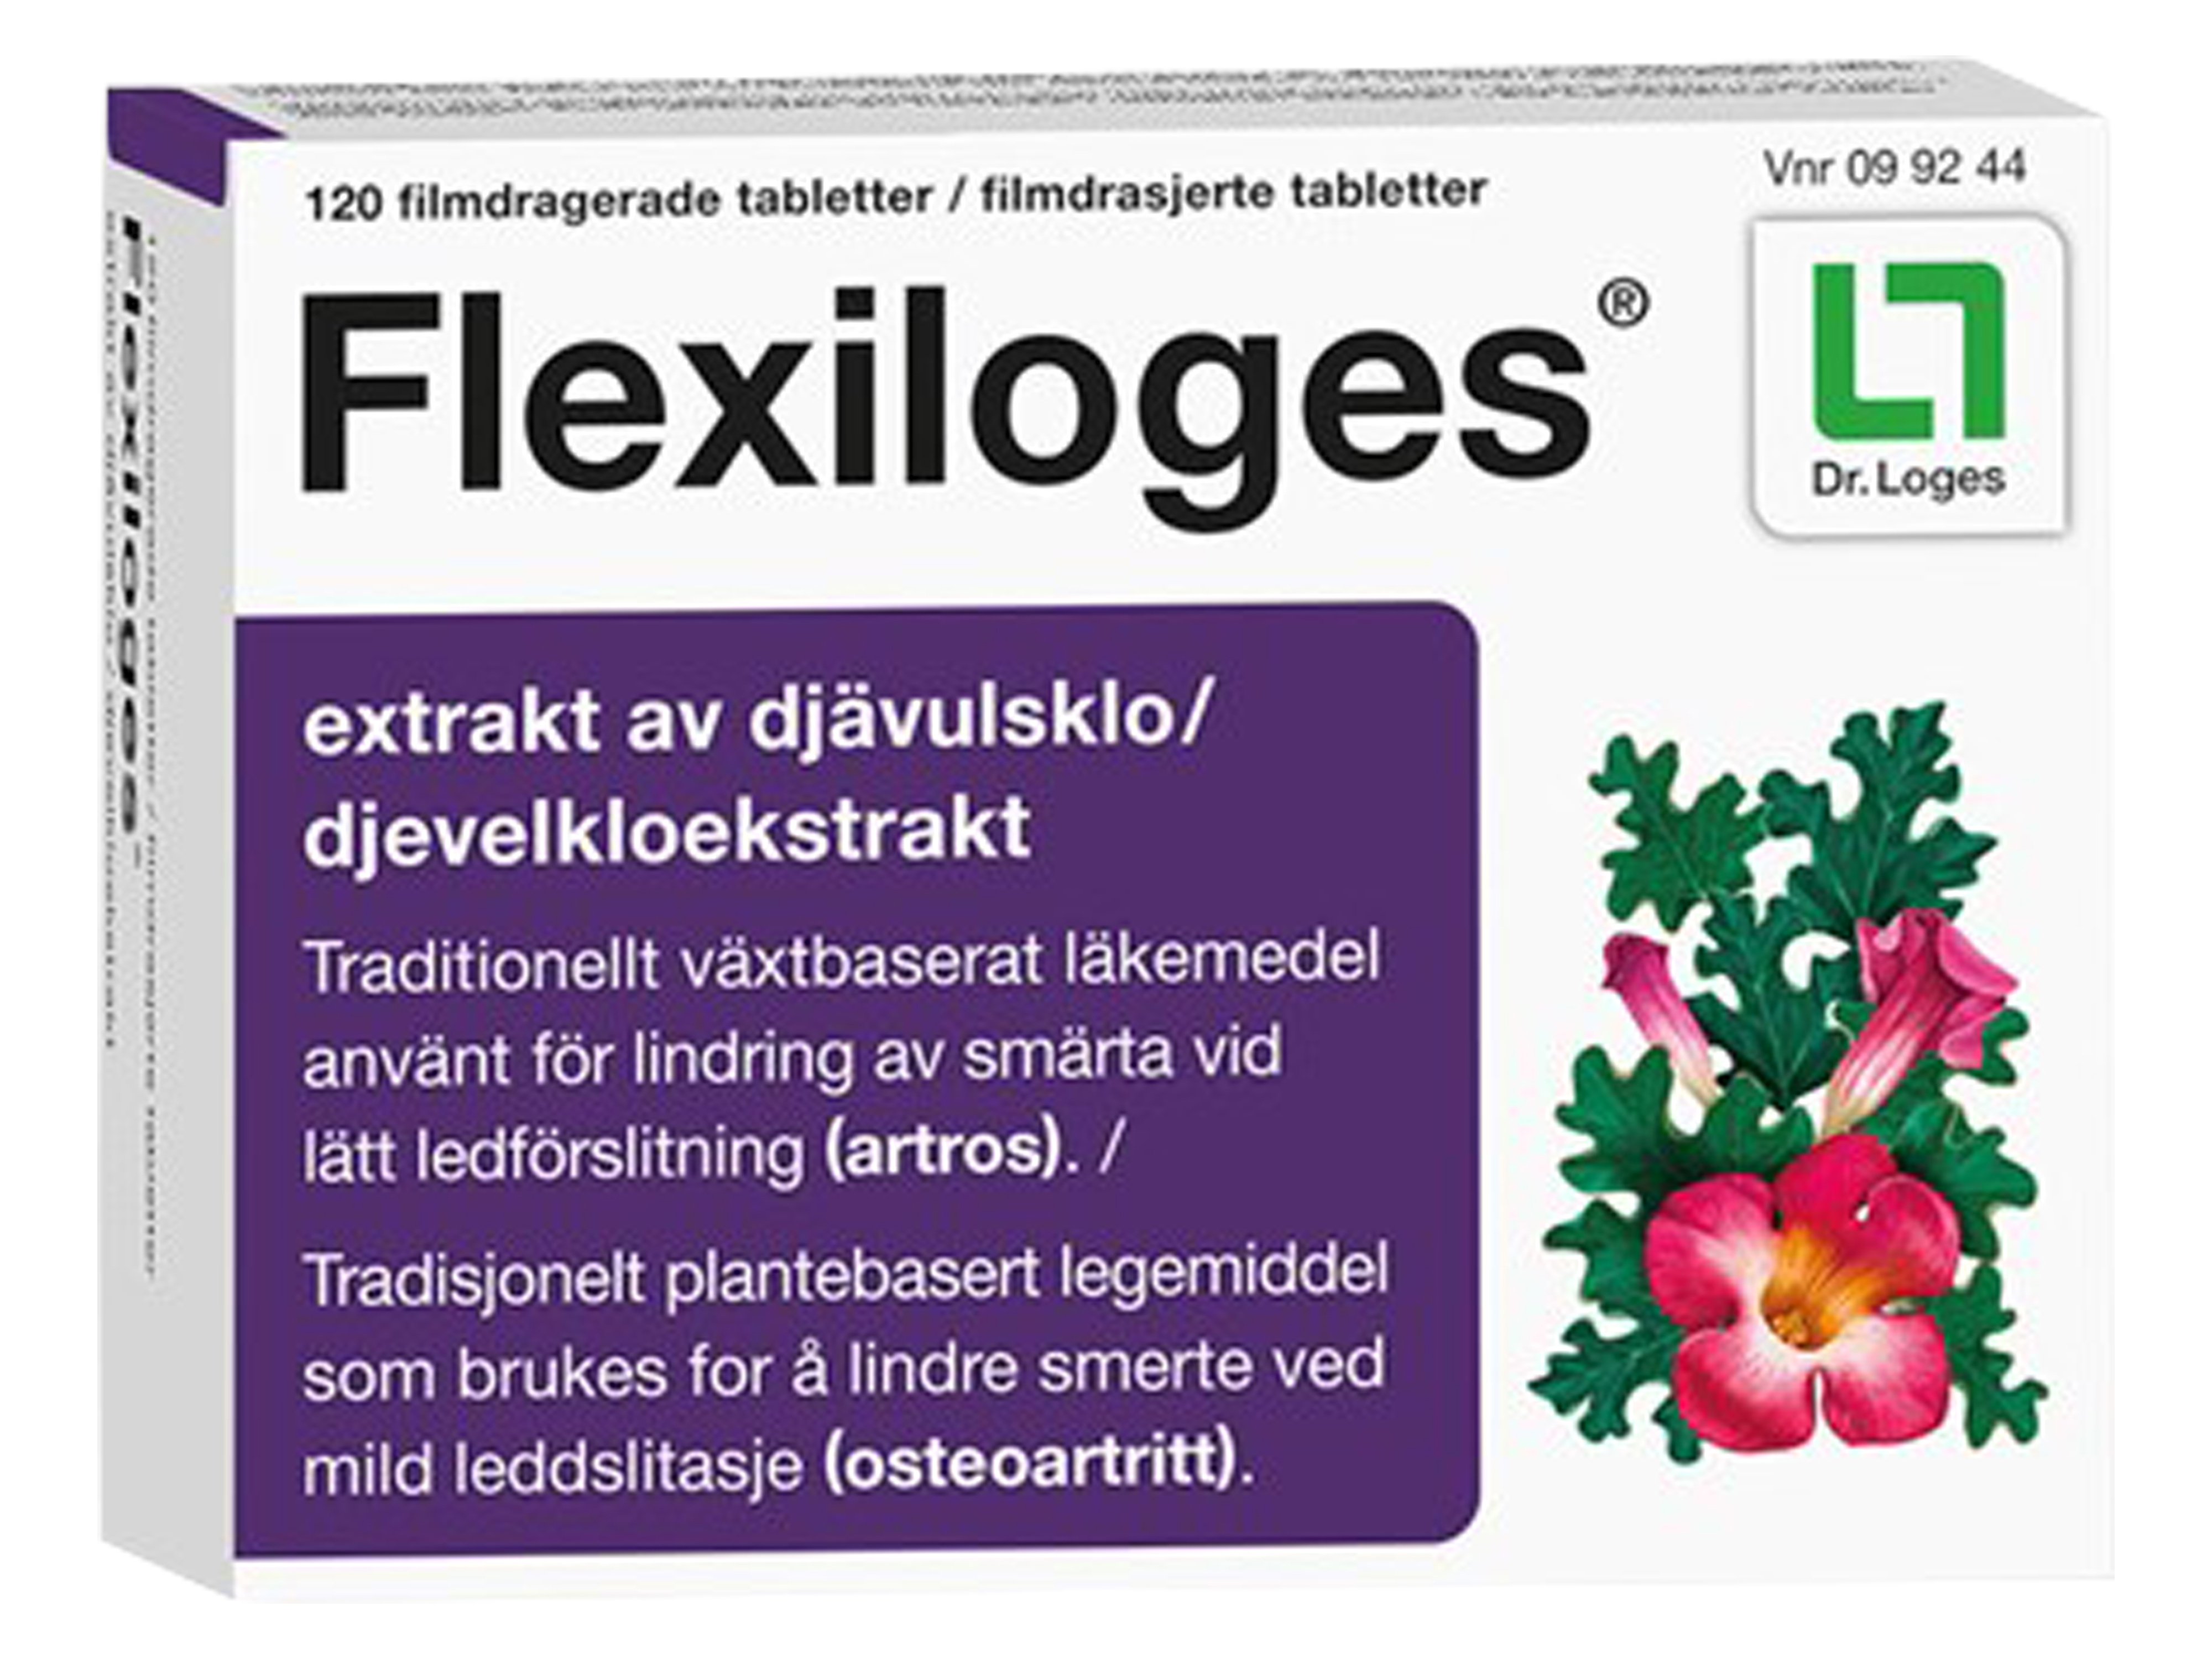 Flexiloges Tabletter, 120 stk.